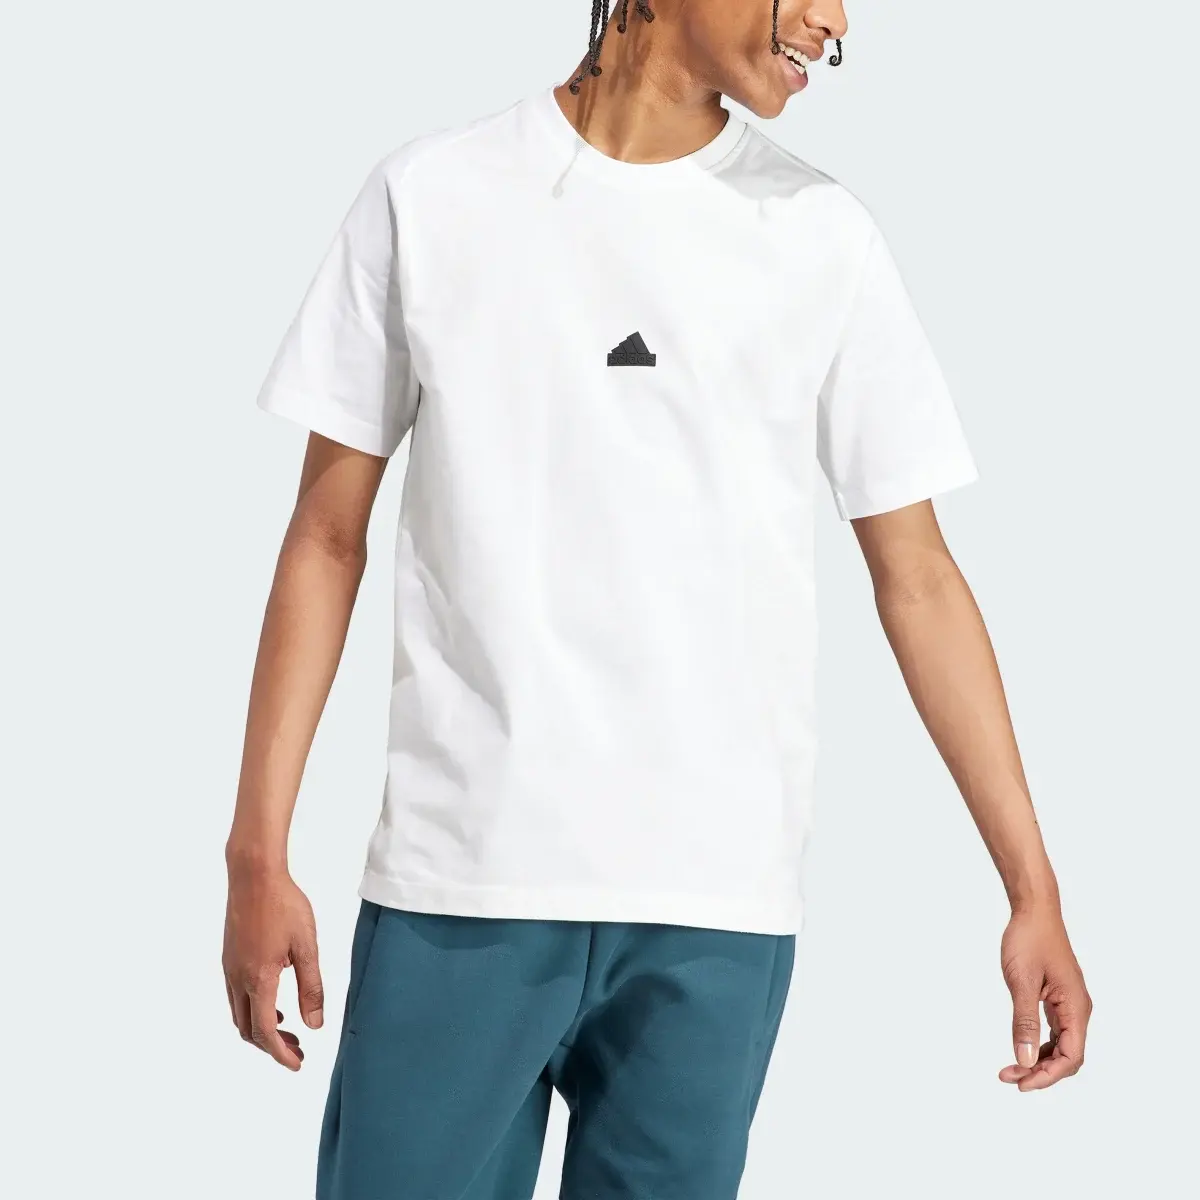 Adidas Z.N.E. T-Shirt. 1